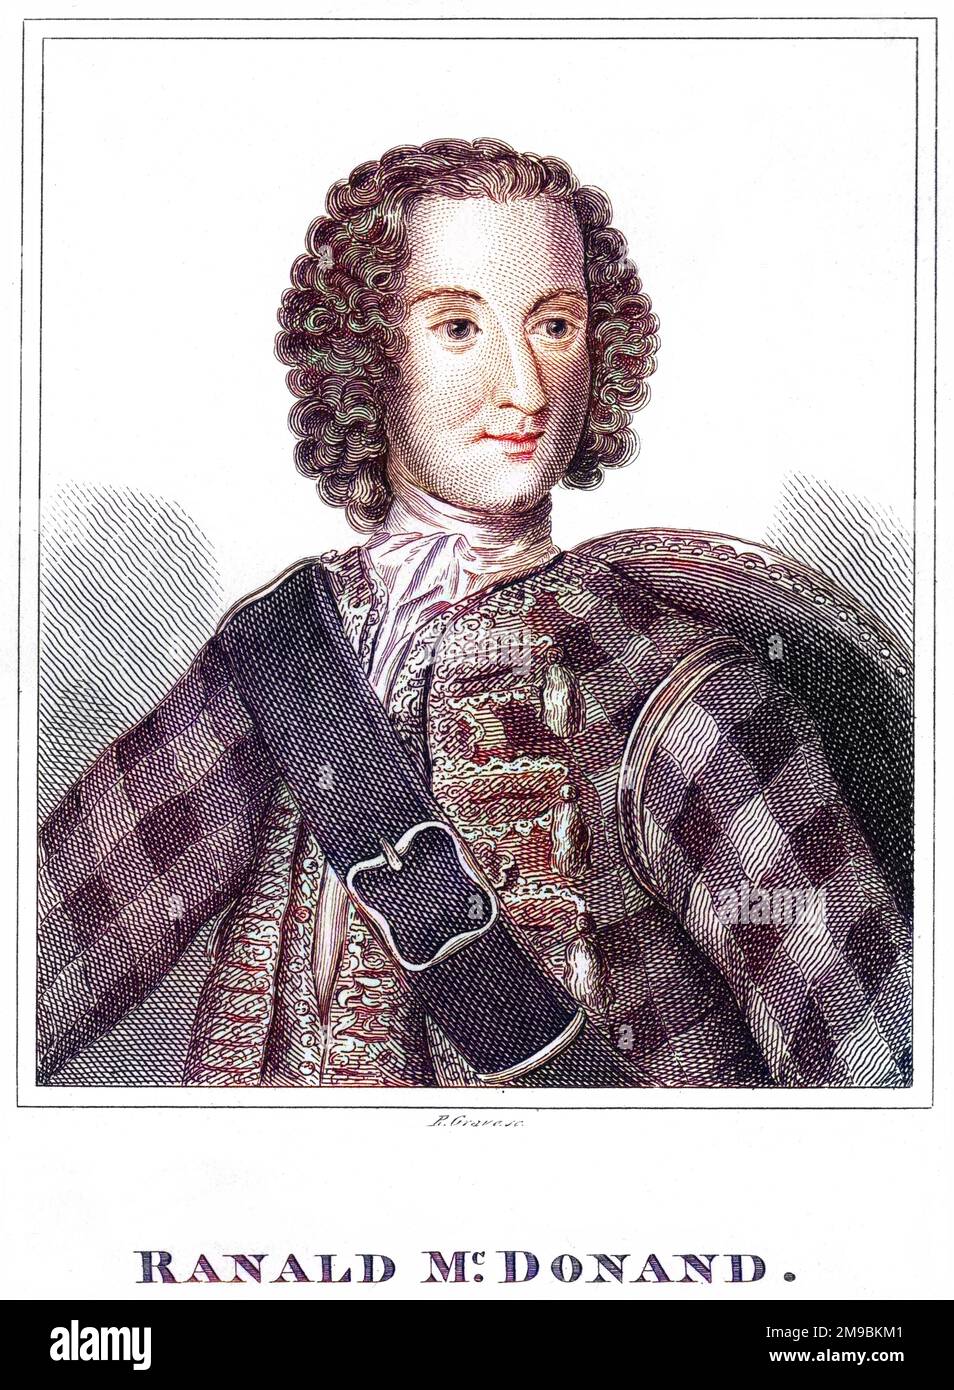 RANALD MACDONALD sostenitore giacobita scozzese di Charles Edward Stuart, per il quale fu condannato per tradimento e decapitato. Foto Stock